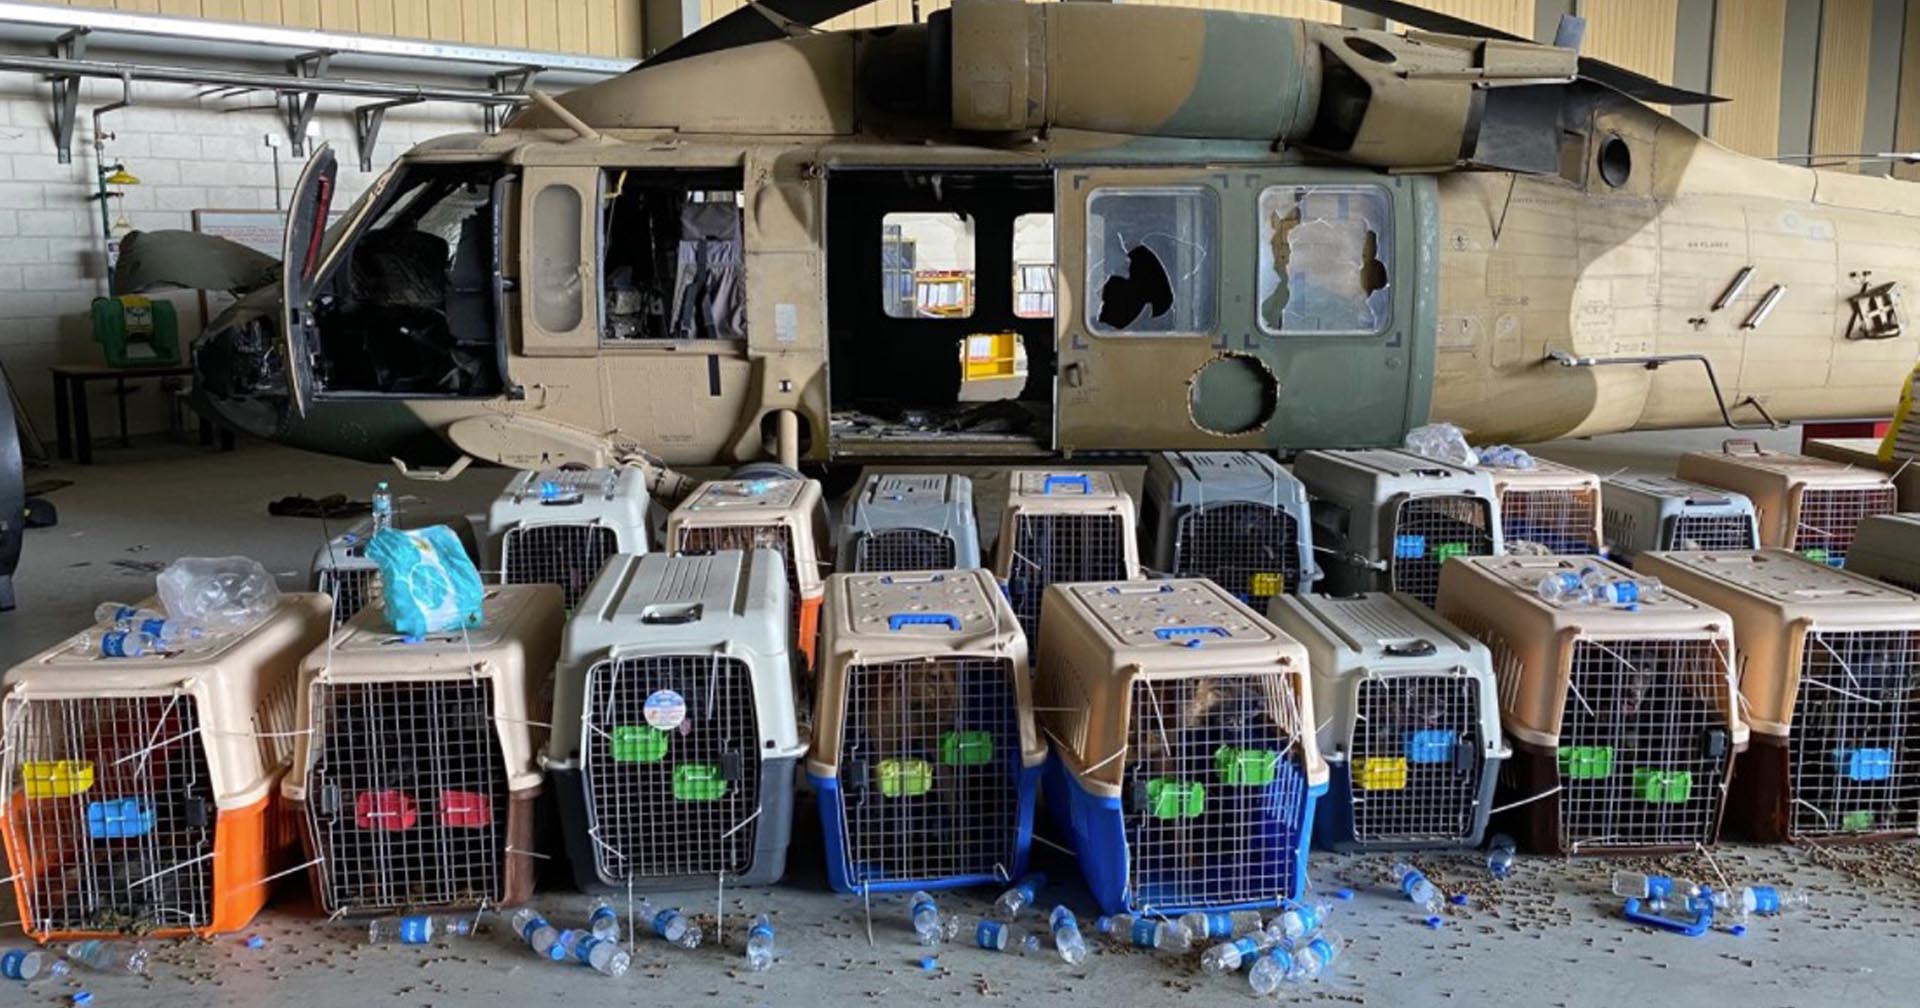 เพนตากอนยืนยัน ไม่มีสุนัขทหารถูกทิ้งไว้ที่อัฟกานิสถานหลังเหตุการณ์ตาลีบันบุกยึดกรุงคาบูล